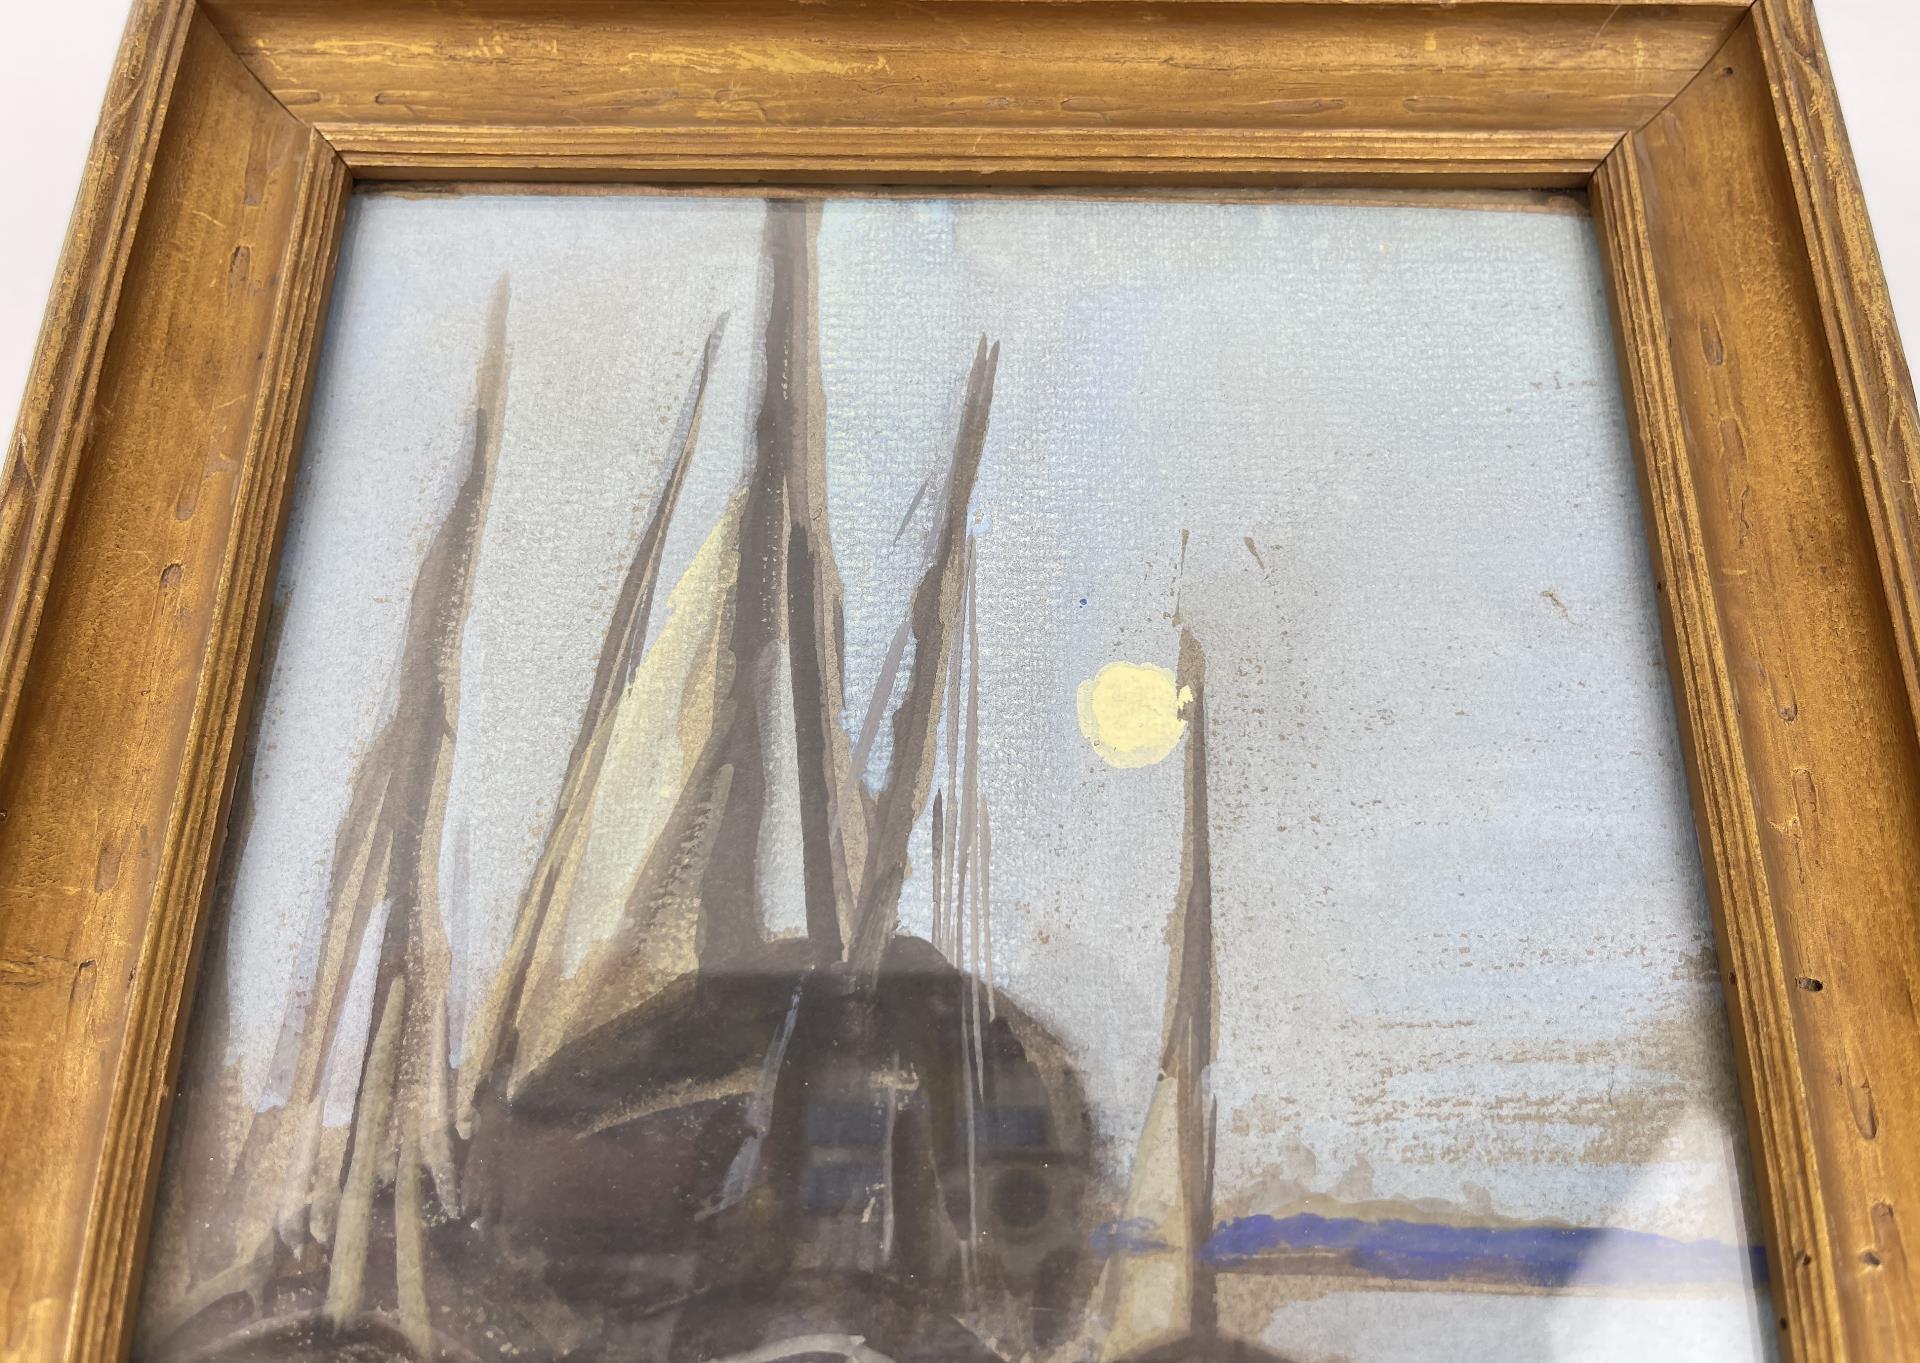 Painting of Sailboats